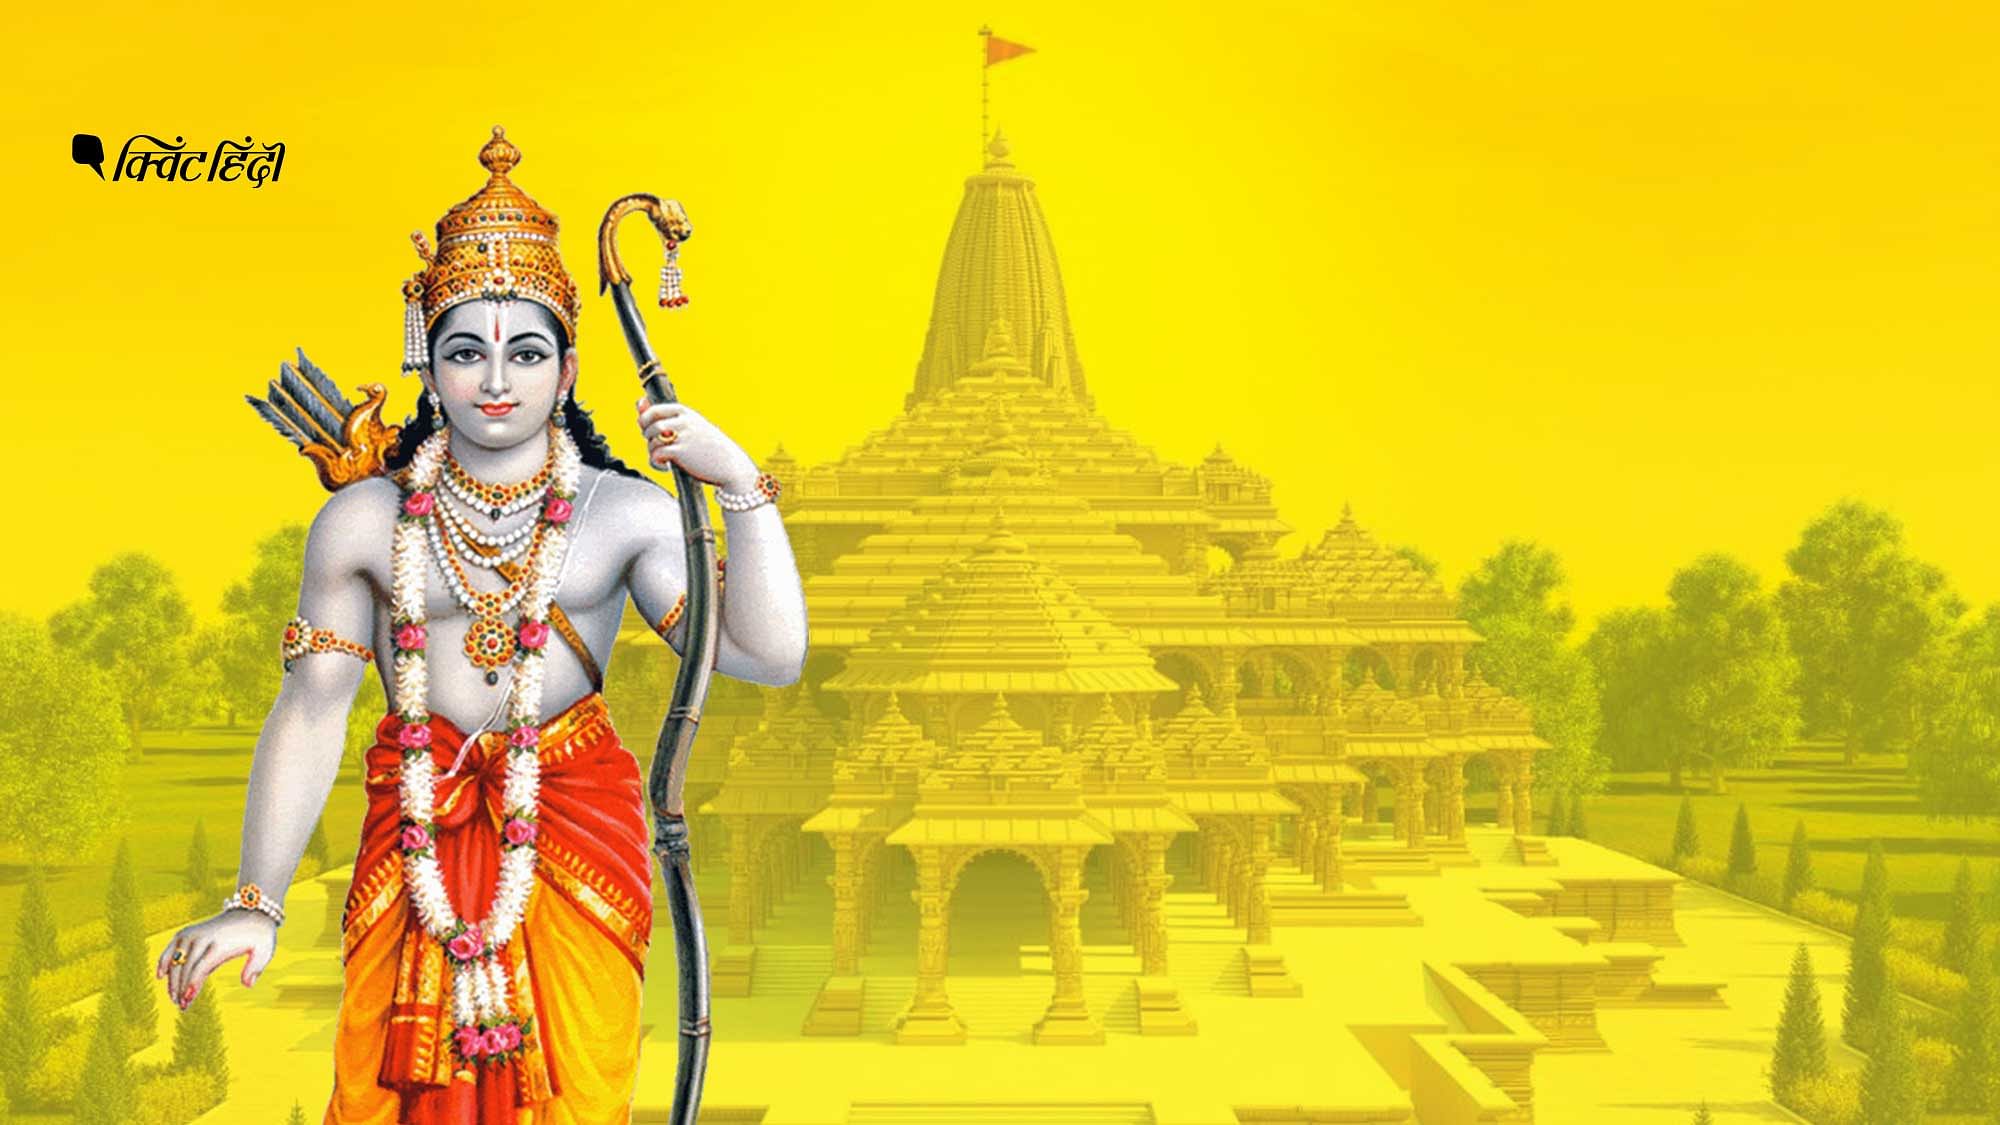 भगवान राम तो धर्म या देश की सीमा से मुक्त एक विलक्षण चरित्र हैं